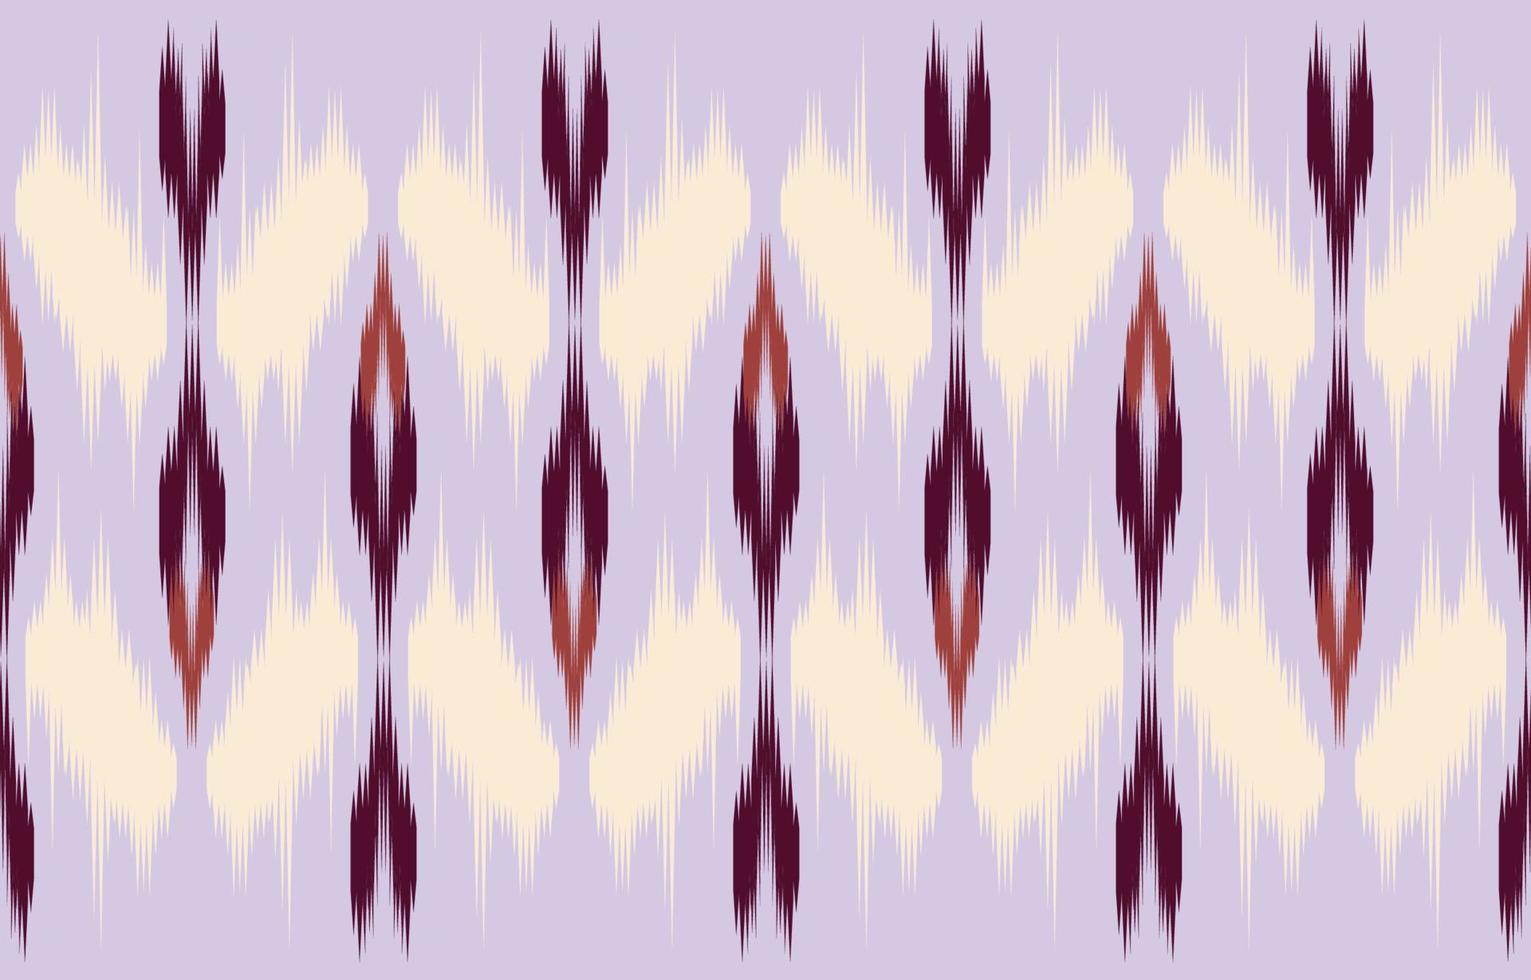 motif ikat harmonieux violet abstrait ethnique dans le style tribal, broderie folklorique et asiatique. impression d'ornement d'art géométrique aztèque. conception pour tapis, papier peint, vêtements, emballage, tissu, couverture. vecteur